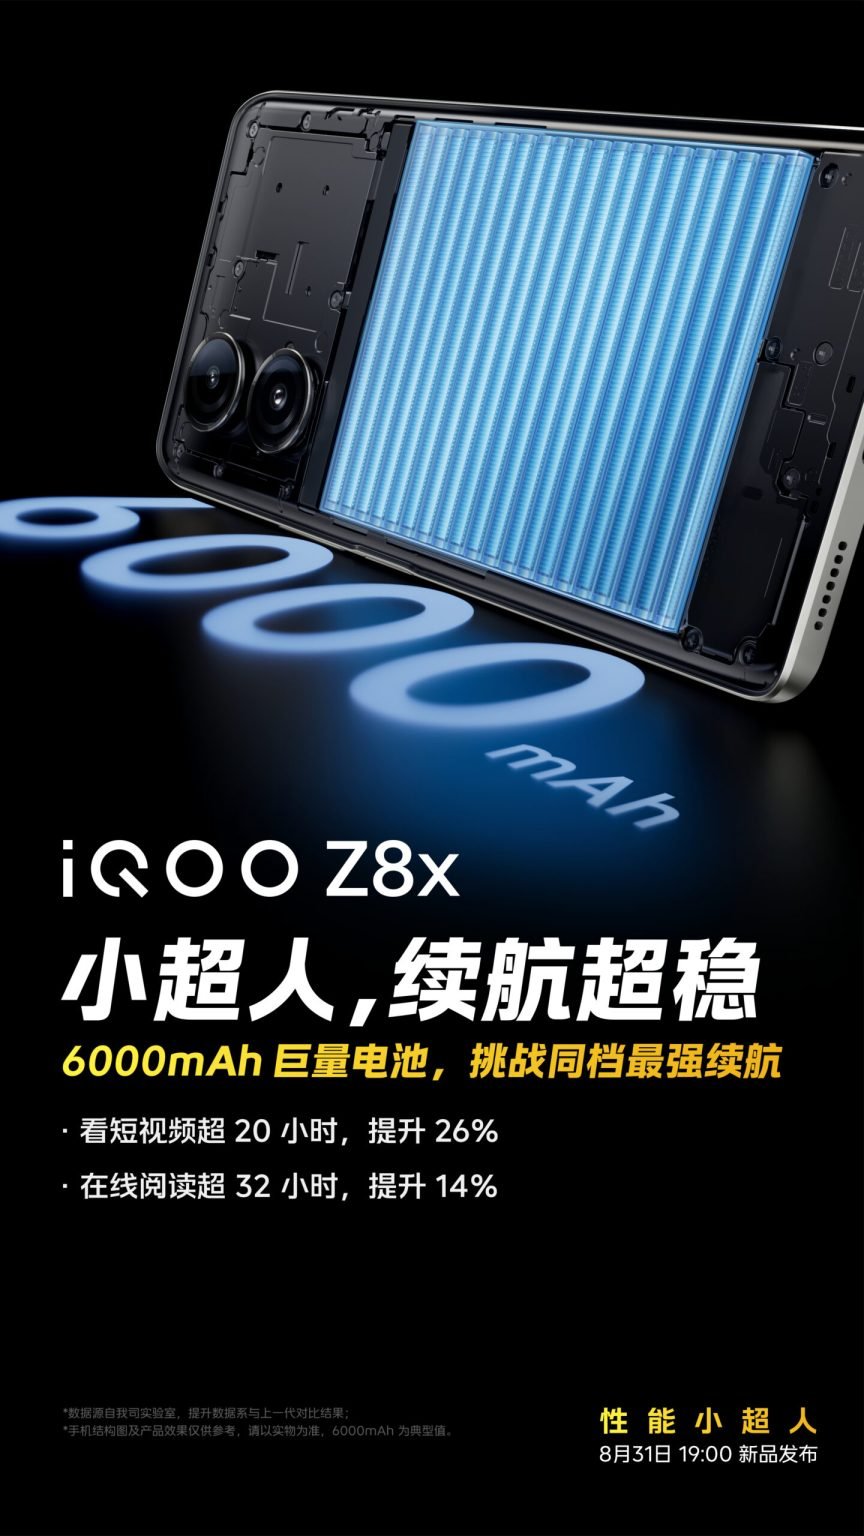 Iqoo Z8x Battery Scaled